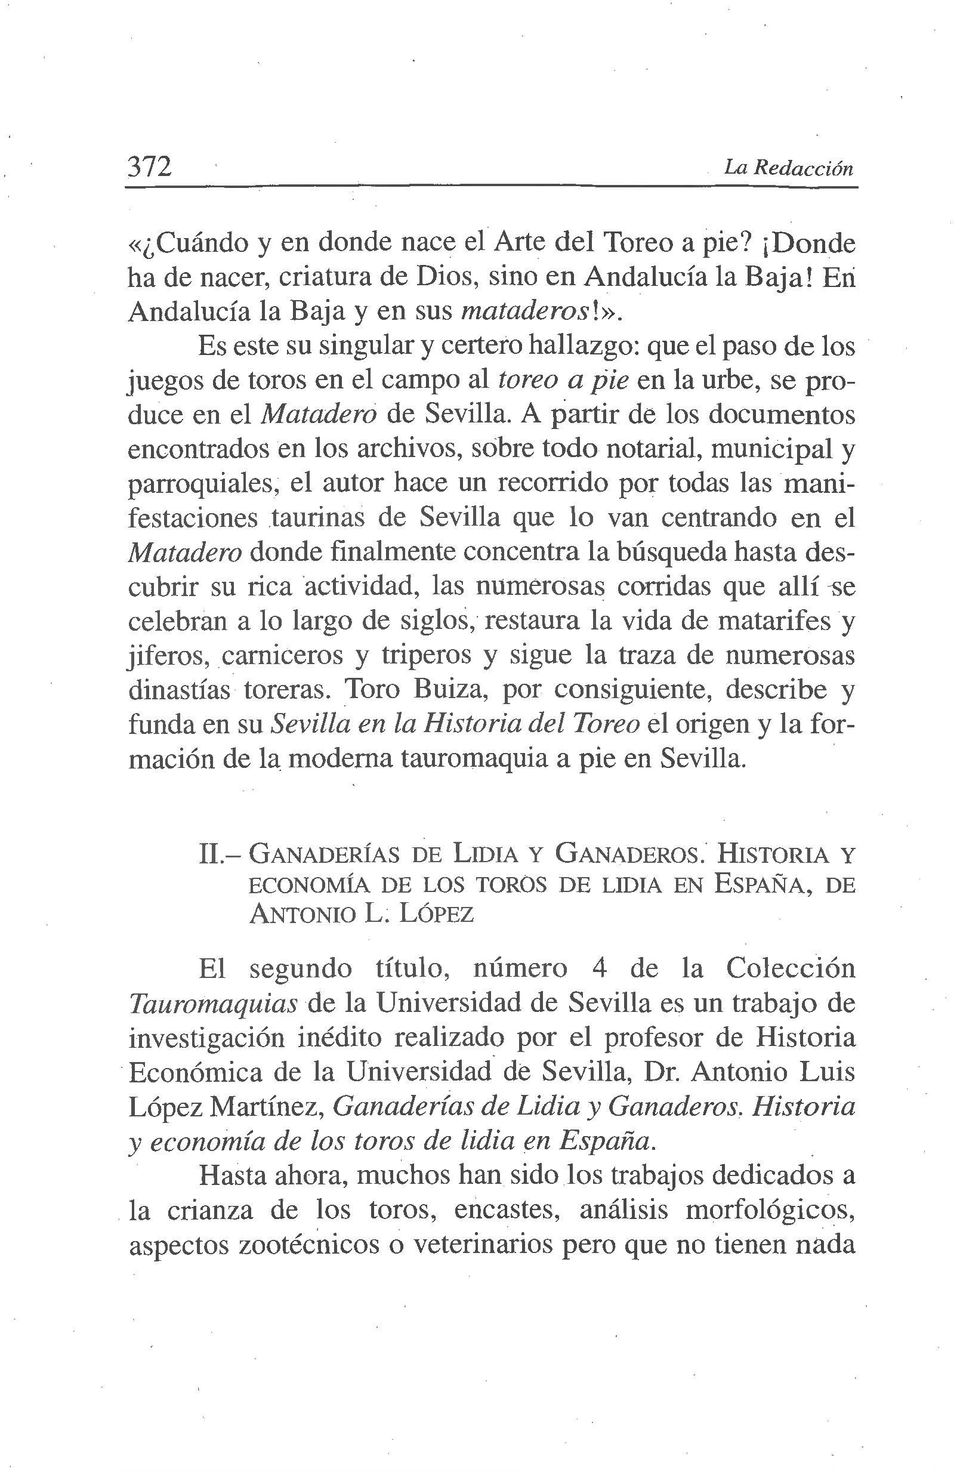 A partir de los documentos encontrados en los archivos, sobre todo notarial, municipal y parroquiales, el autor hace un recorrido por todas las manifestaciones taurinas de Sevilla que lo van